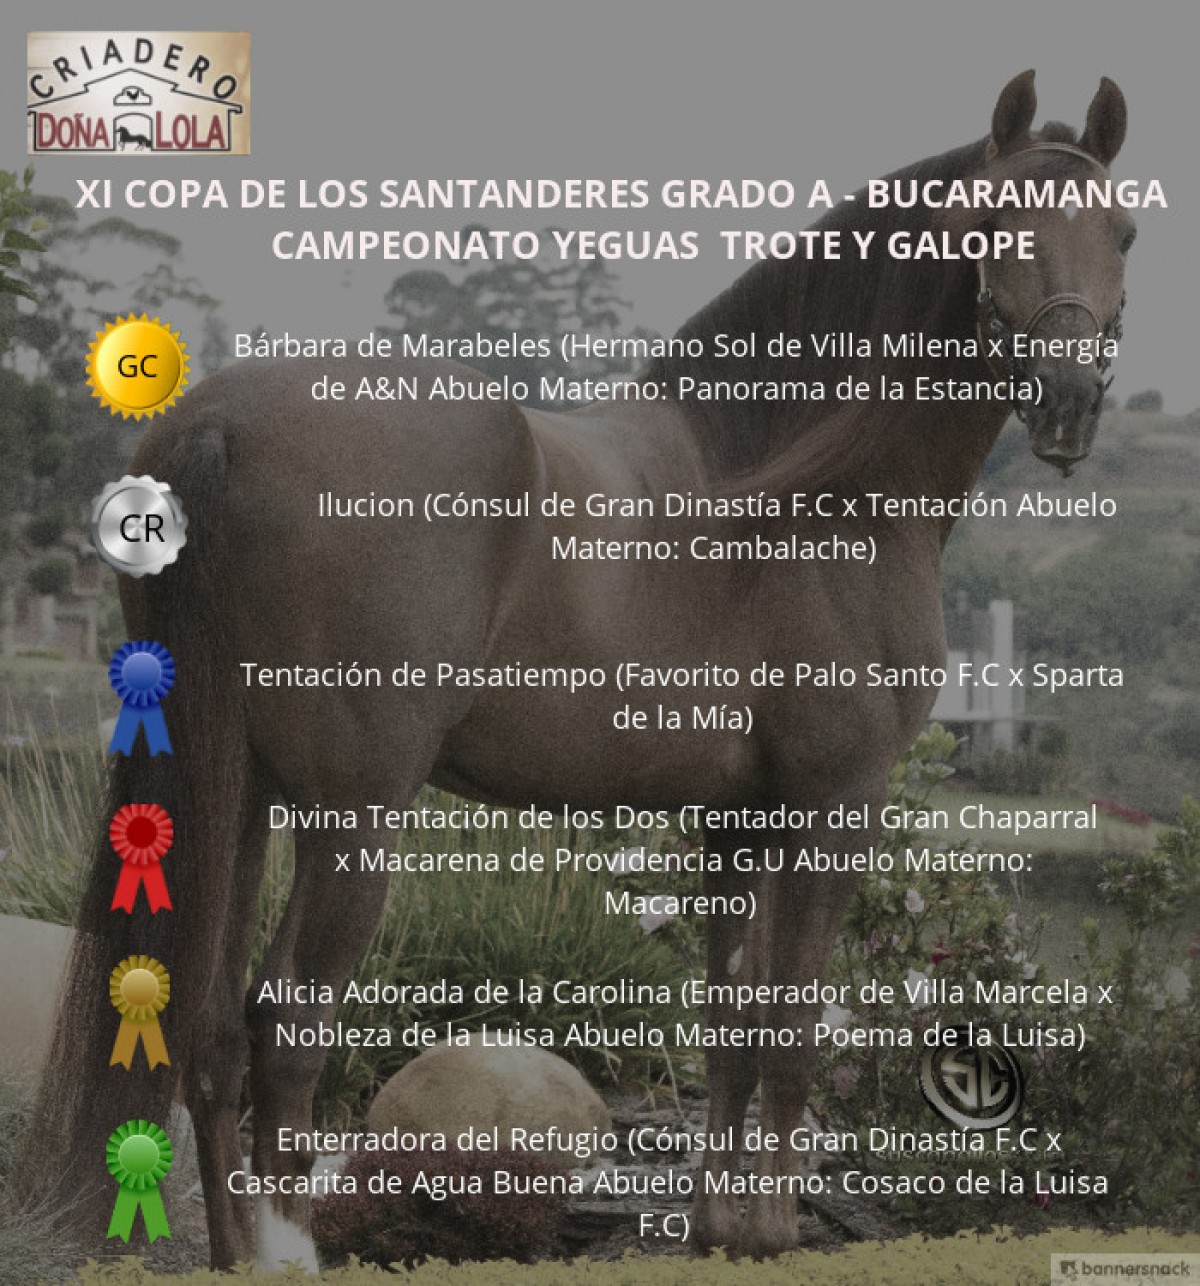 VÍDEO: Bárbara Campeona, Ilucion Reservada, Trote y Galope, Bucaramanga 2018